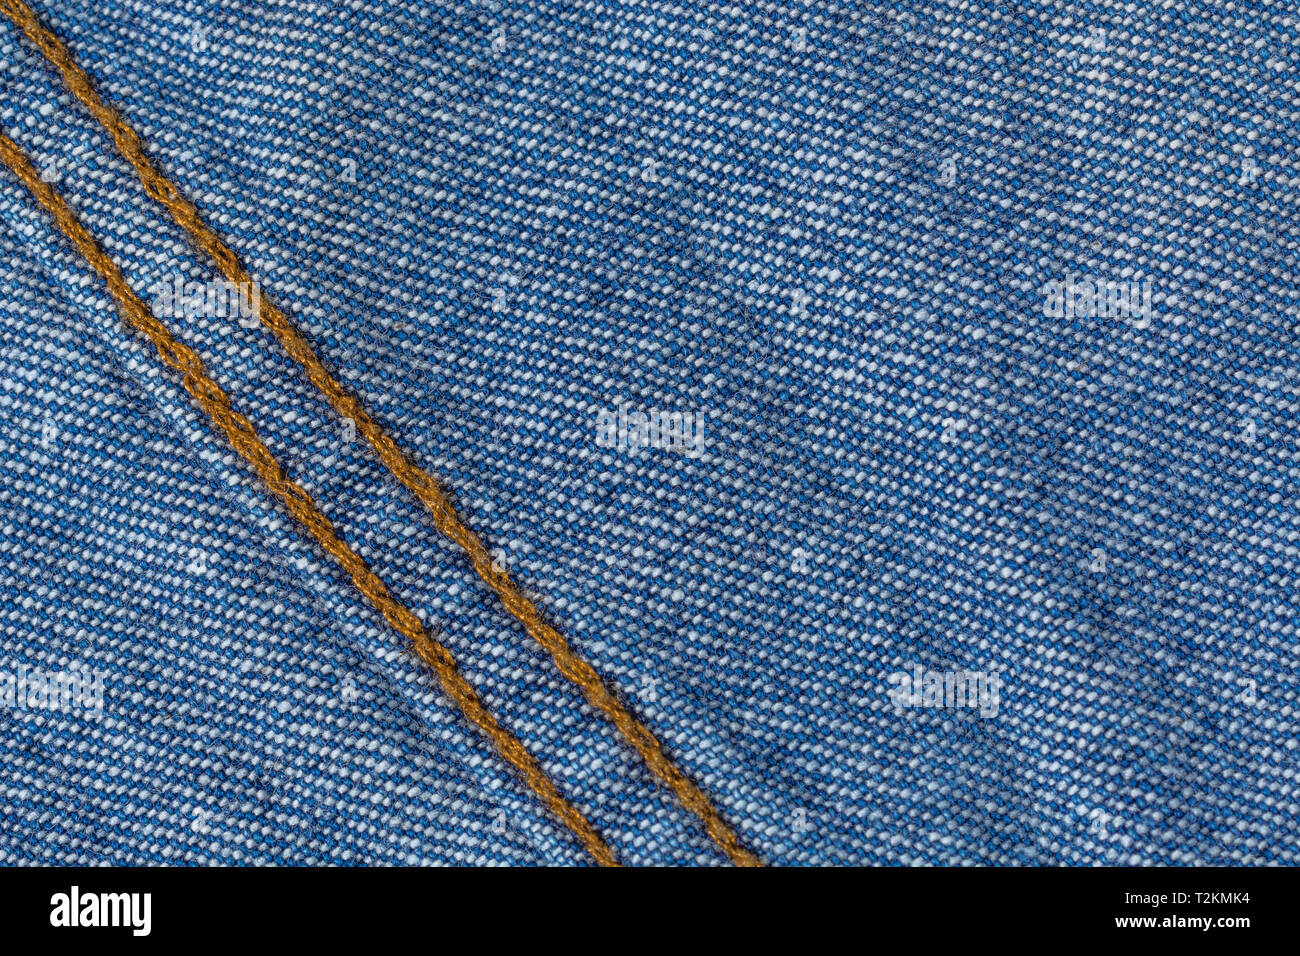 Primer plano de tela vaquera azul, mostrando patrón de trama de deformación y trama y costura naranja. Línea cosida, línea de puntos. Foto de stock